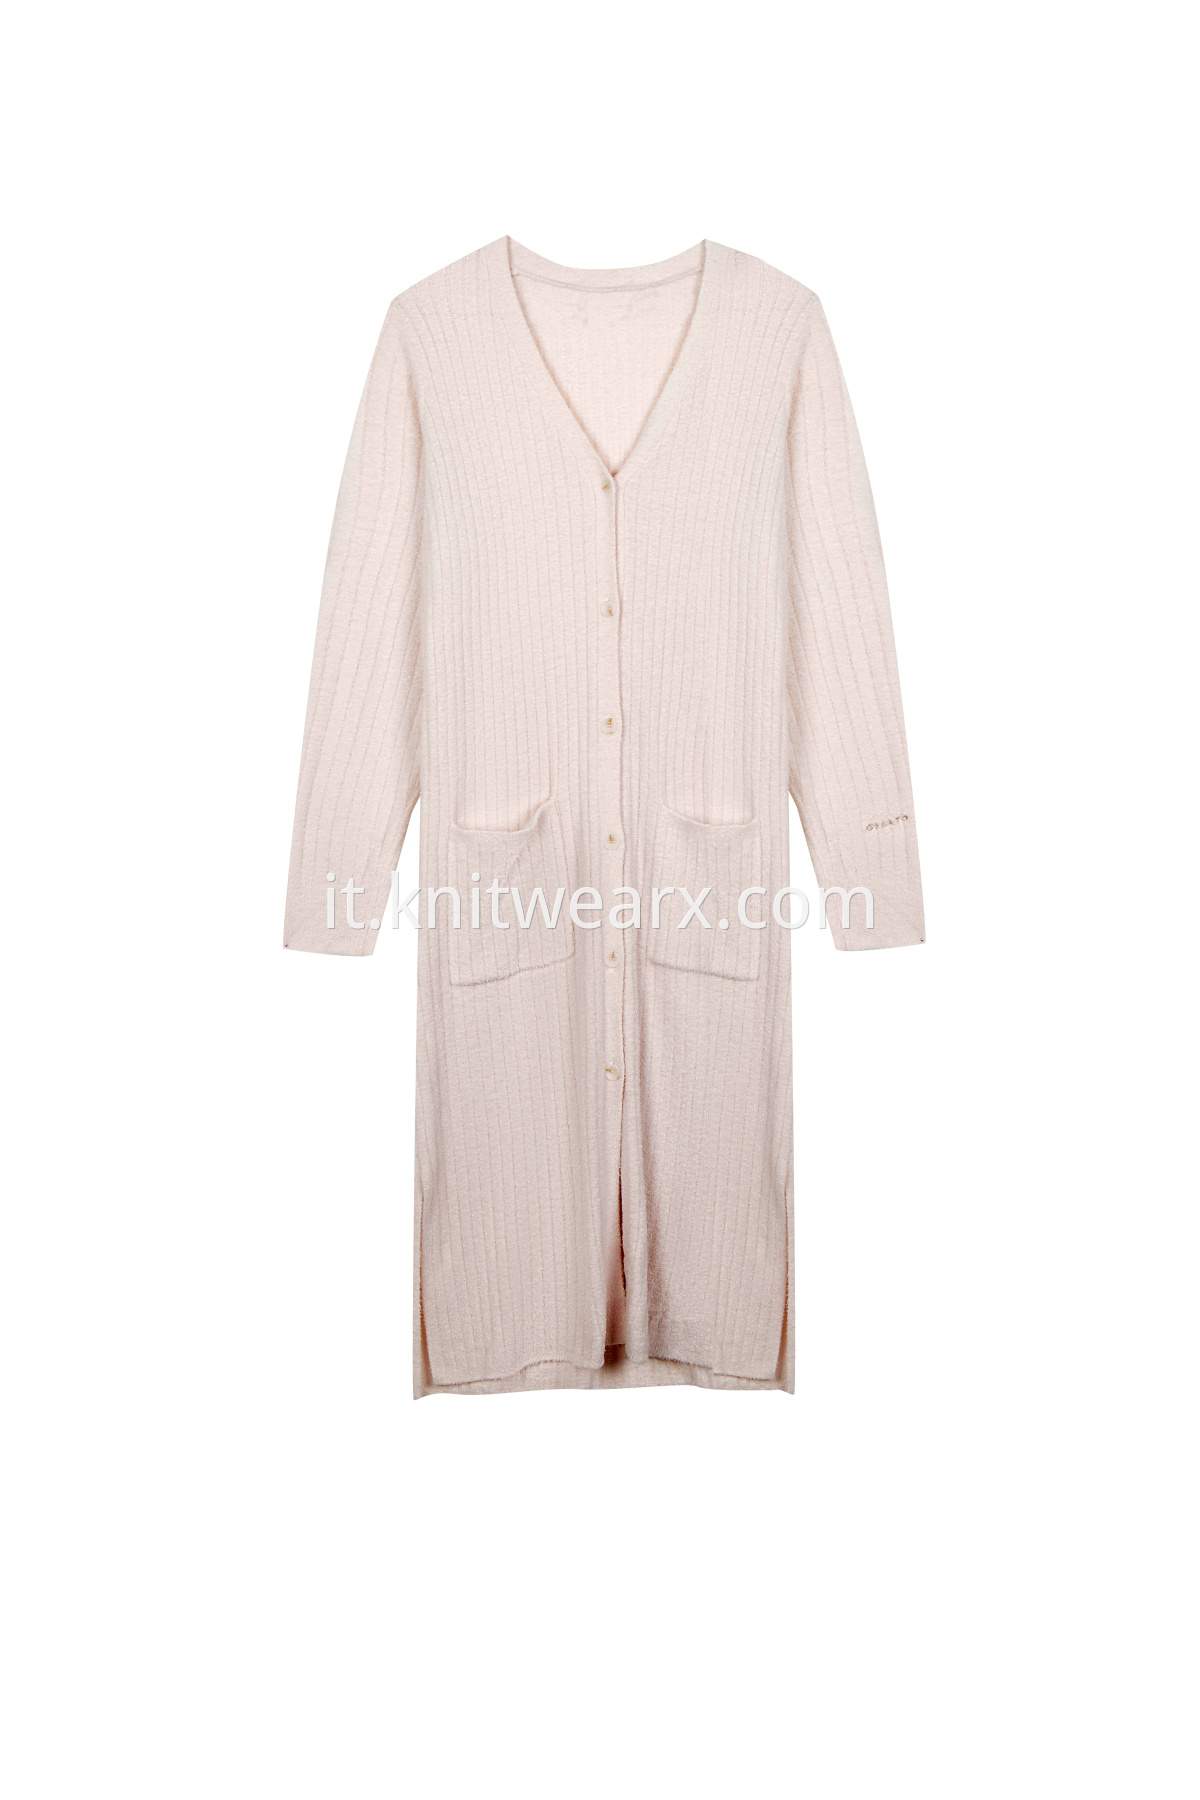 Women's Long Sleeve Homewear Button Down Sleepwear Pajamas Set